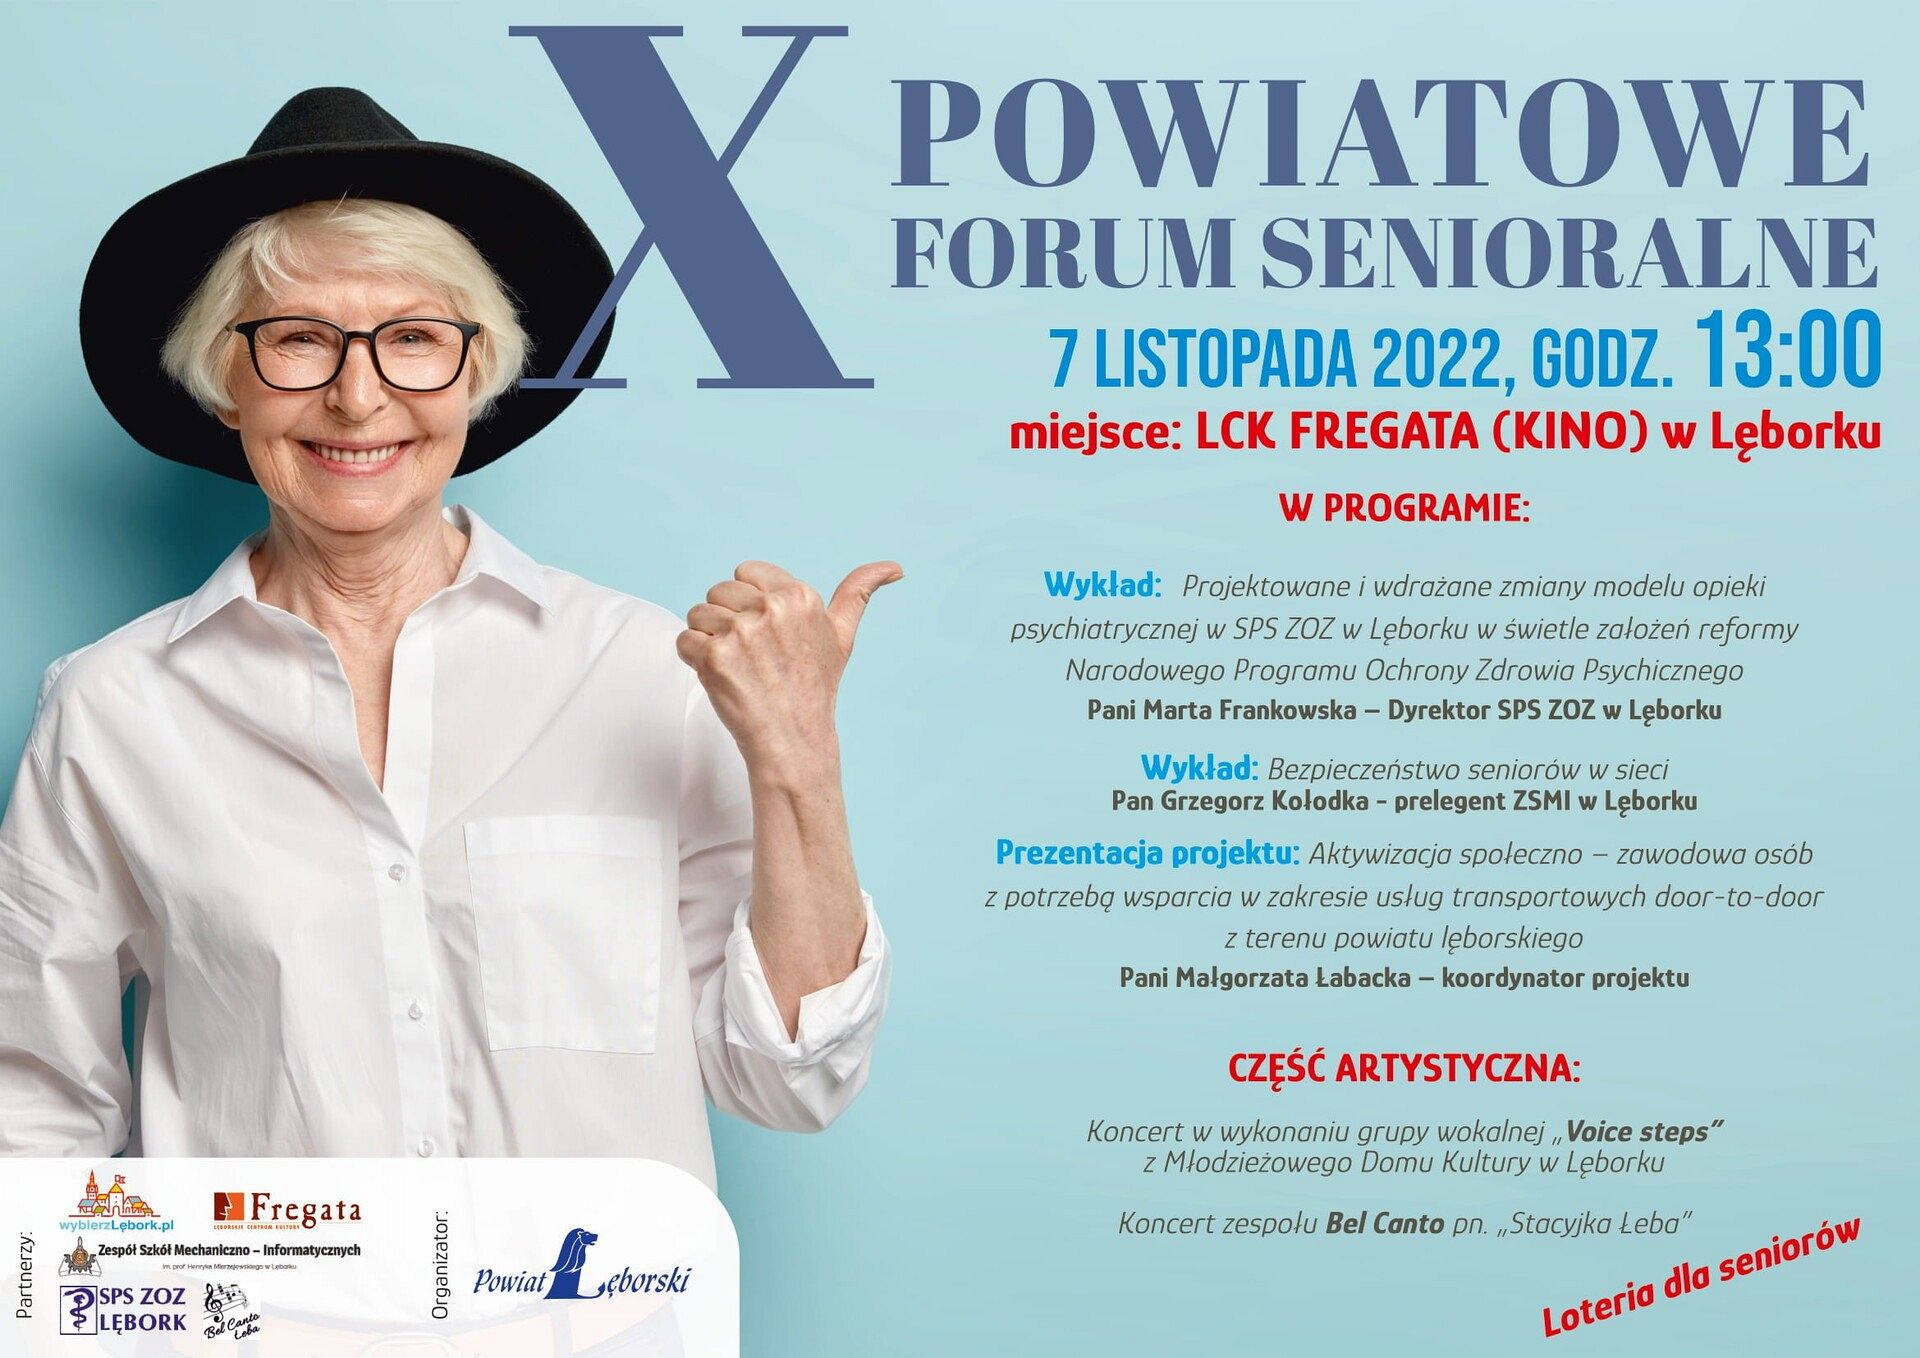 X Powiatowe Forum senioralne